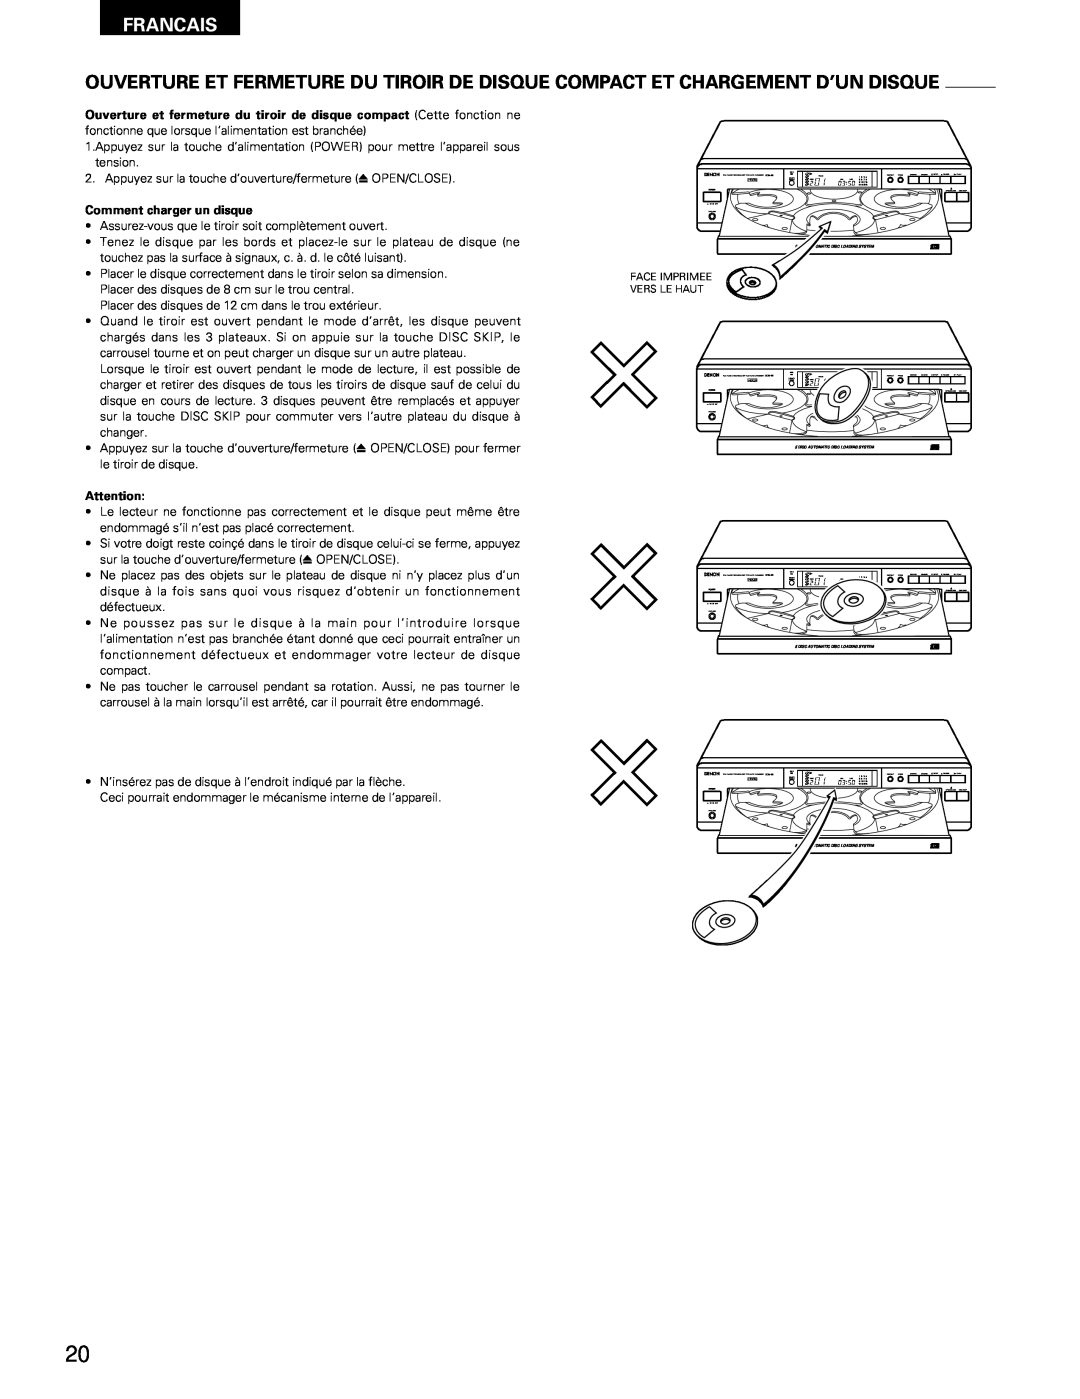 Denon DCM-65/35 manual Francais, Comment charger un disque, Face Imprimee Vers Le Haut 